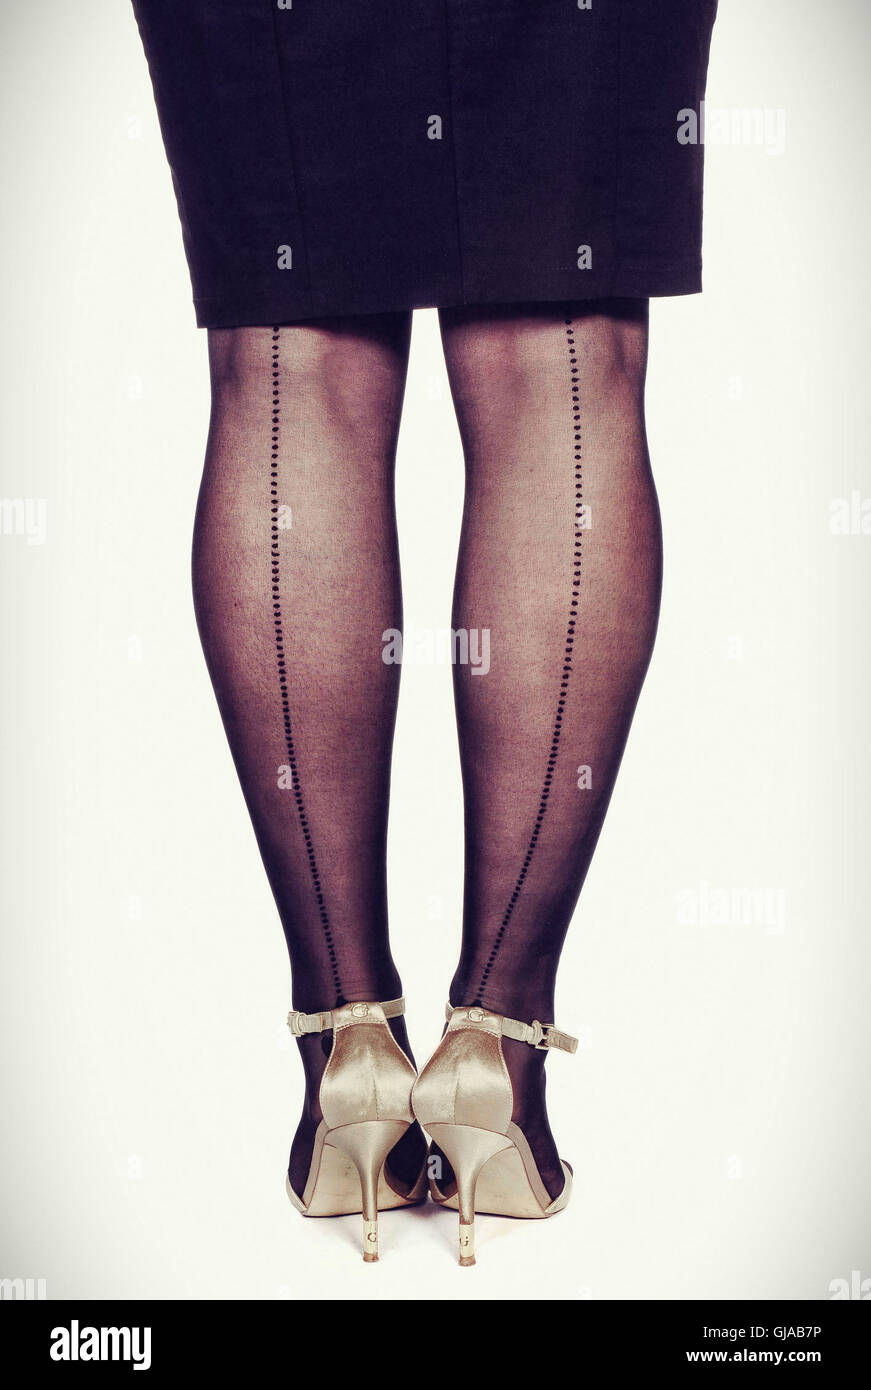 Frauen die Beine, Rock, schwarz, Nylon-Strumpfhosen Stockfotografie - Alamy